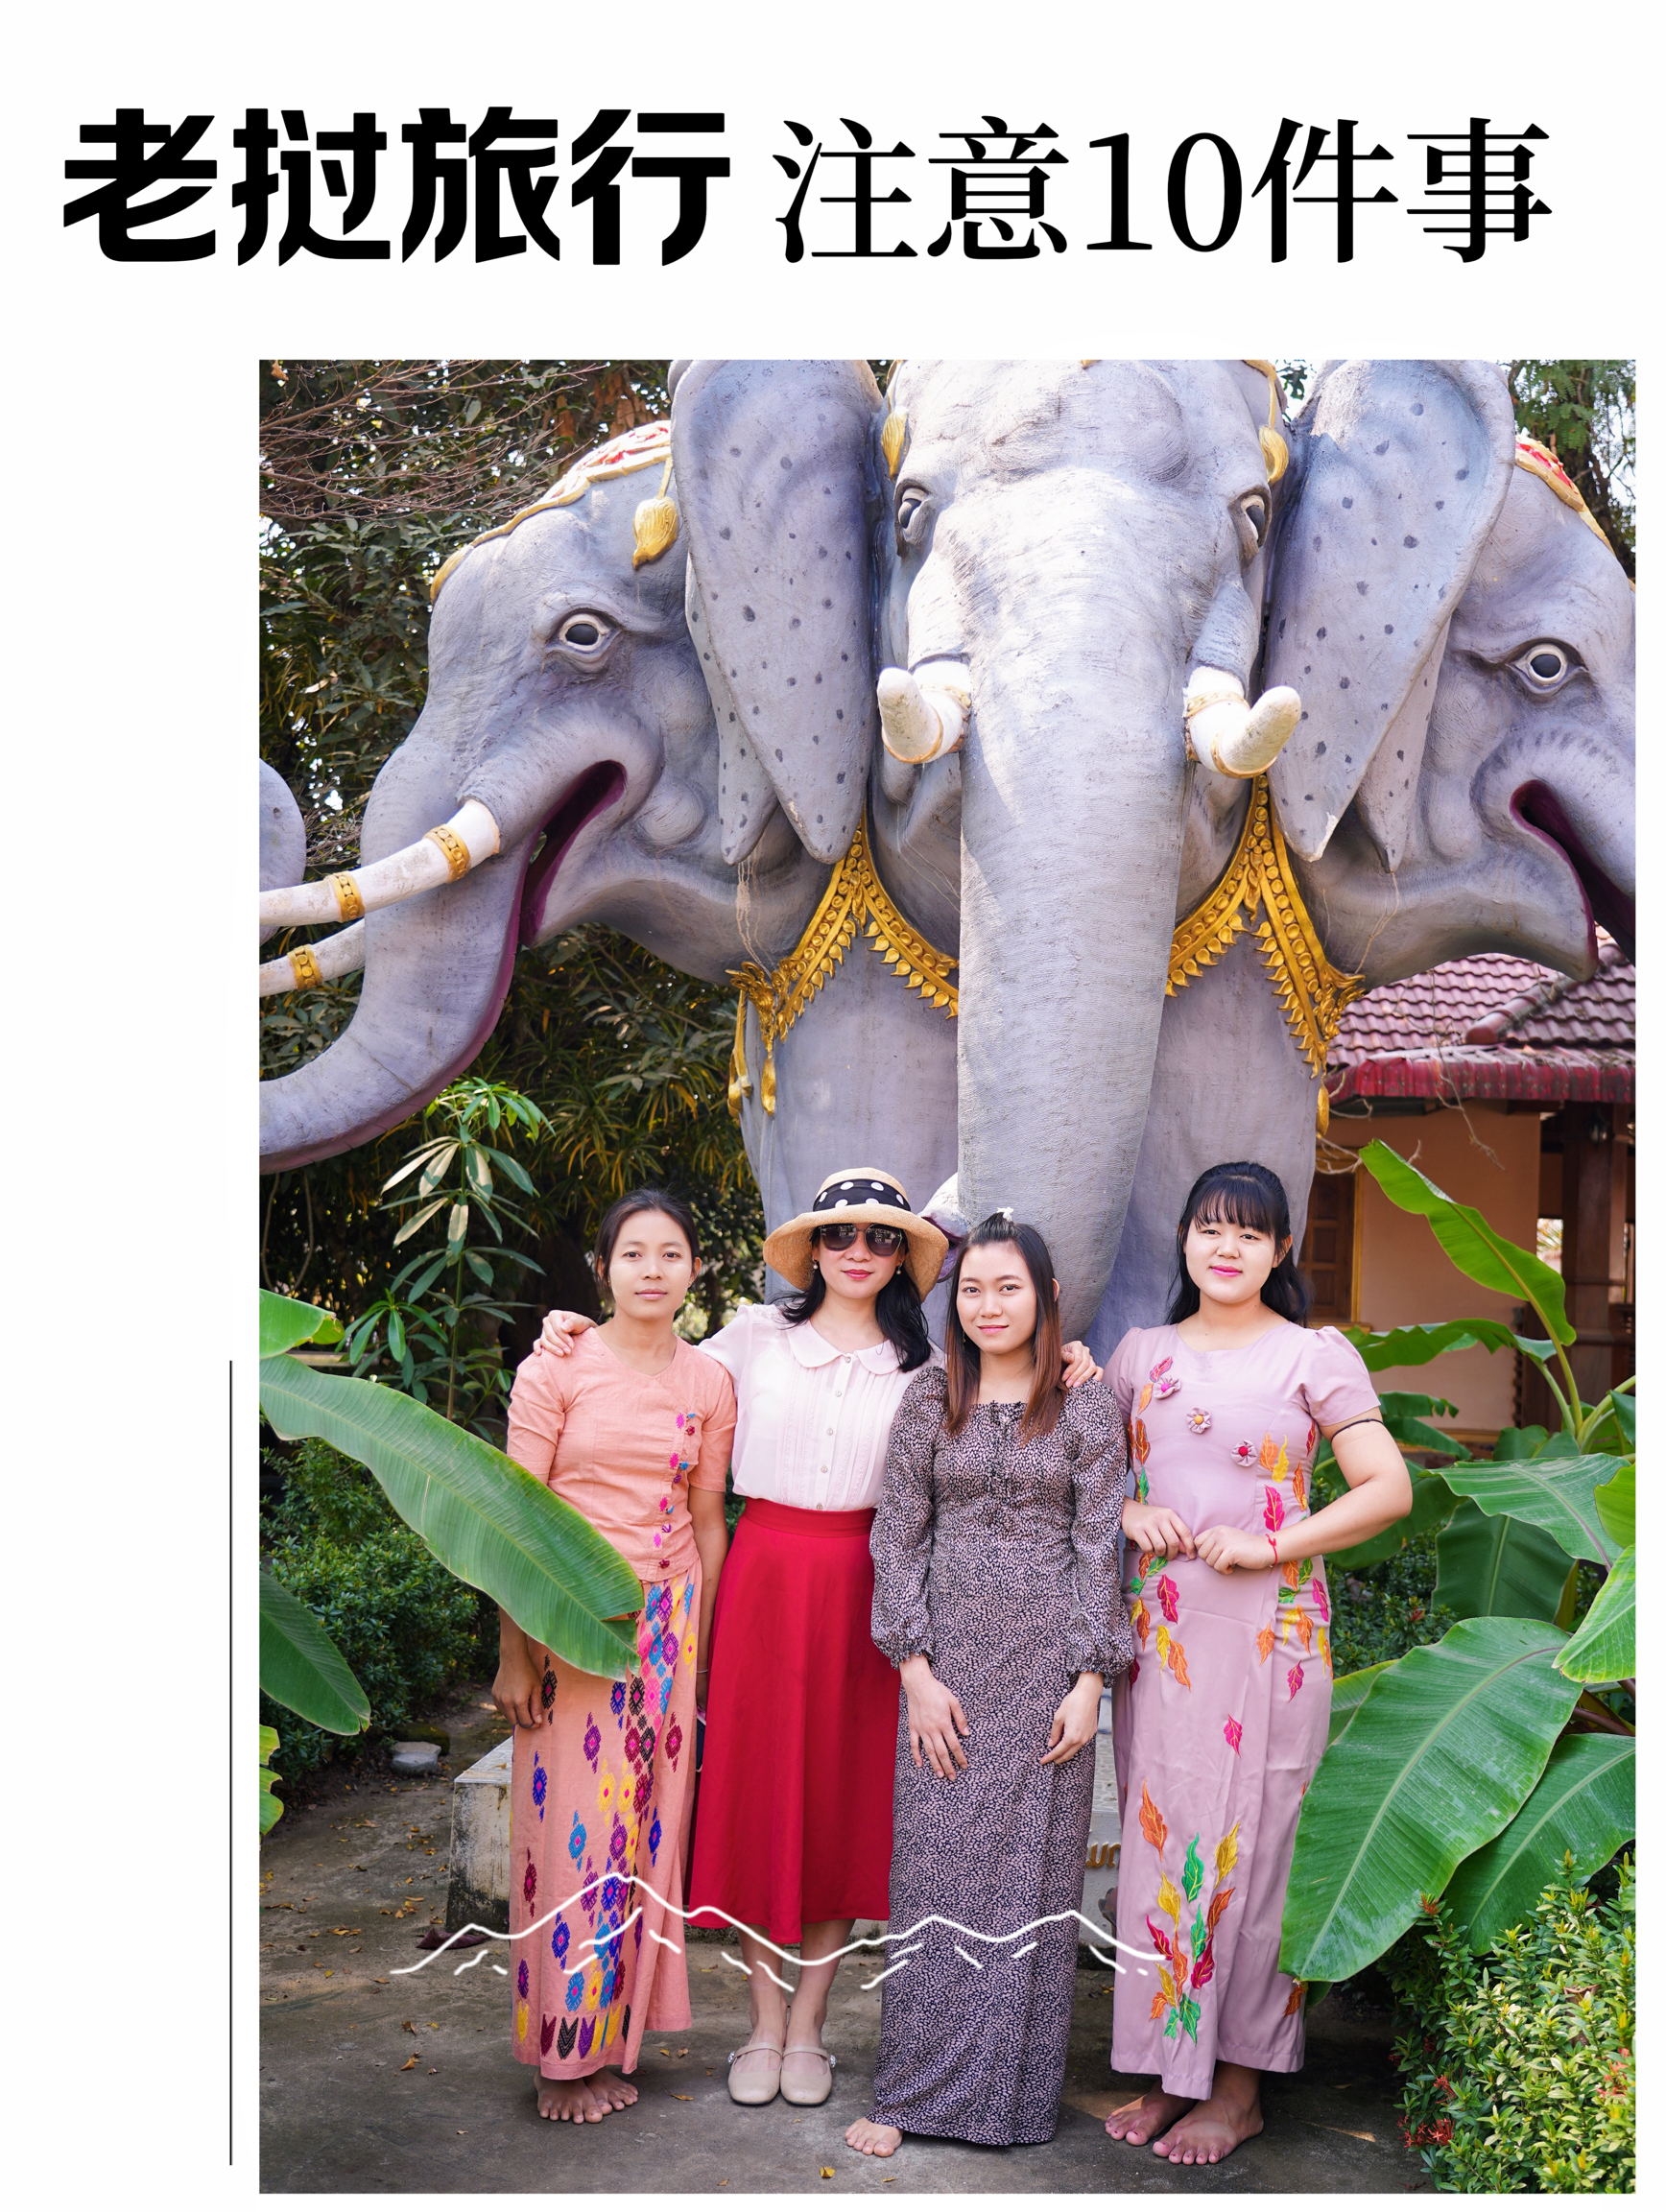 老挝旅游需要注意的10件事，自驾也能很惬意